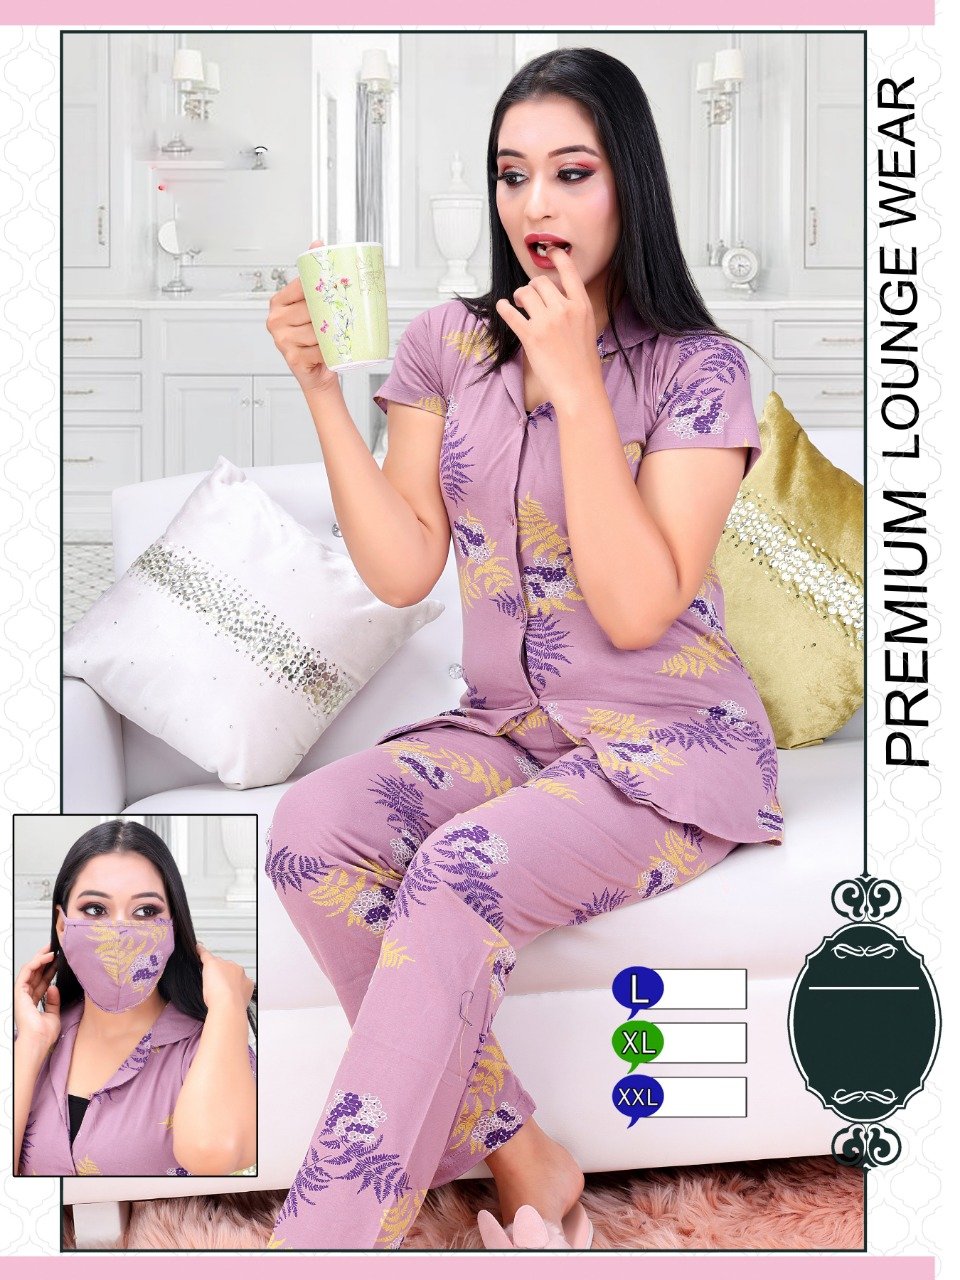 Printed Girls Purple Cotton Night Suit Top and Pajamas Set - Stilento